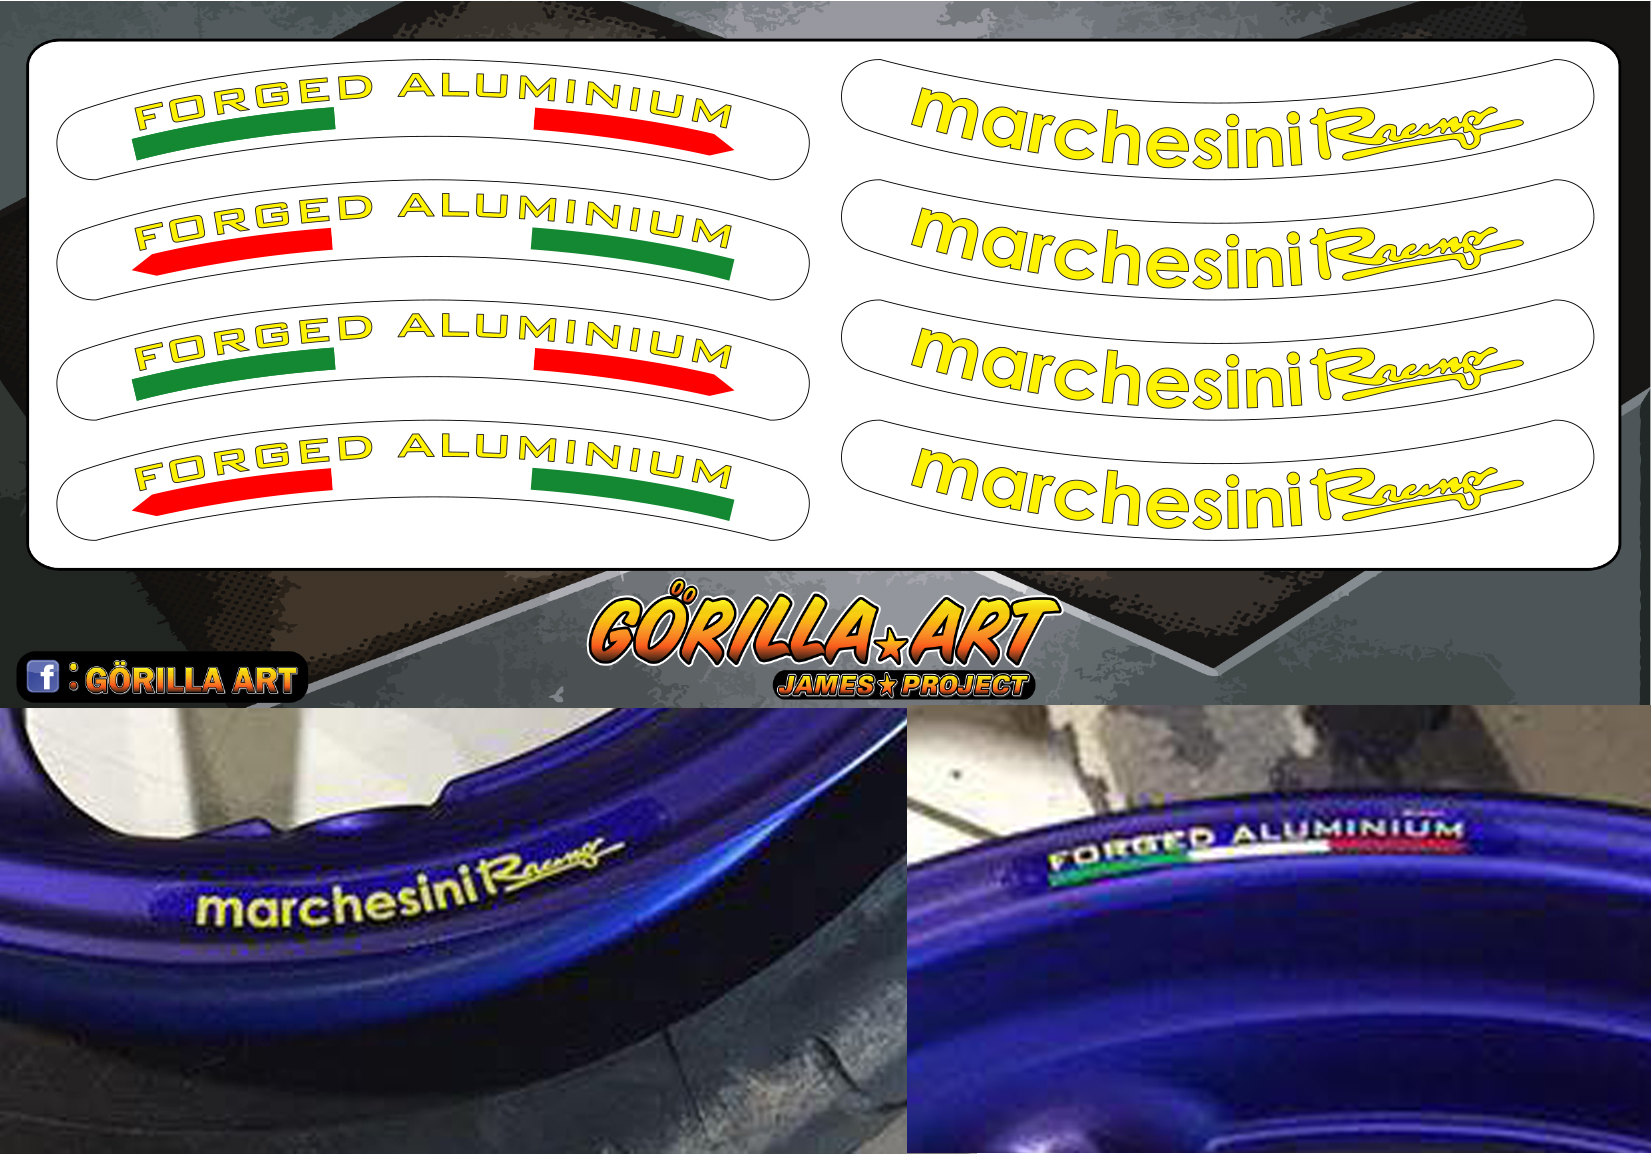 สติ๊กเกอร์ติดวงล้อ ติดขอบล้อ Marchesini V2 Sticker เกรดพรีเมี่ยม ( พื้นใสอักษรเหลือง )